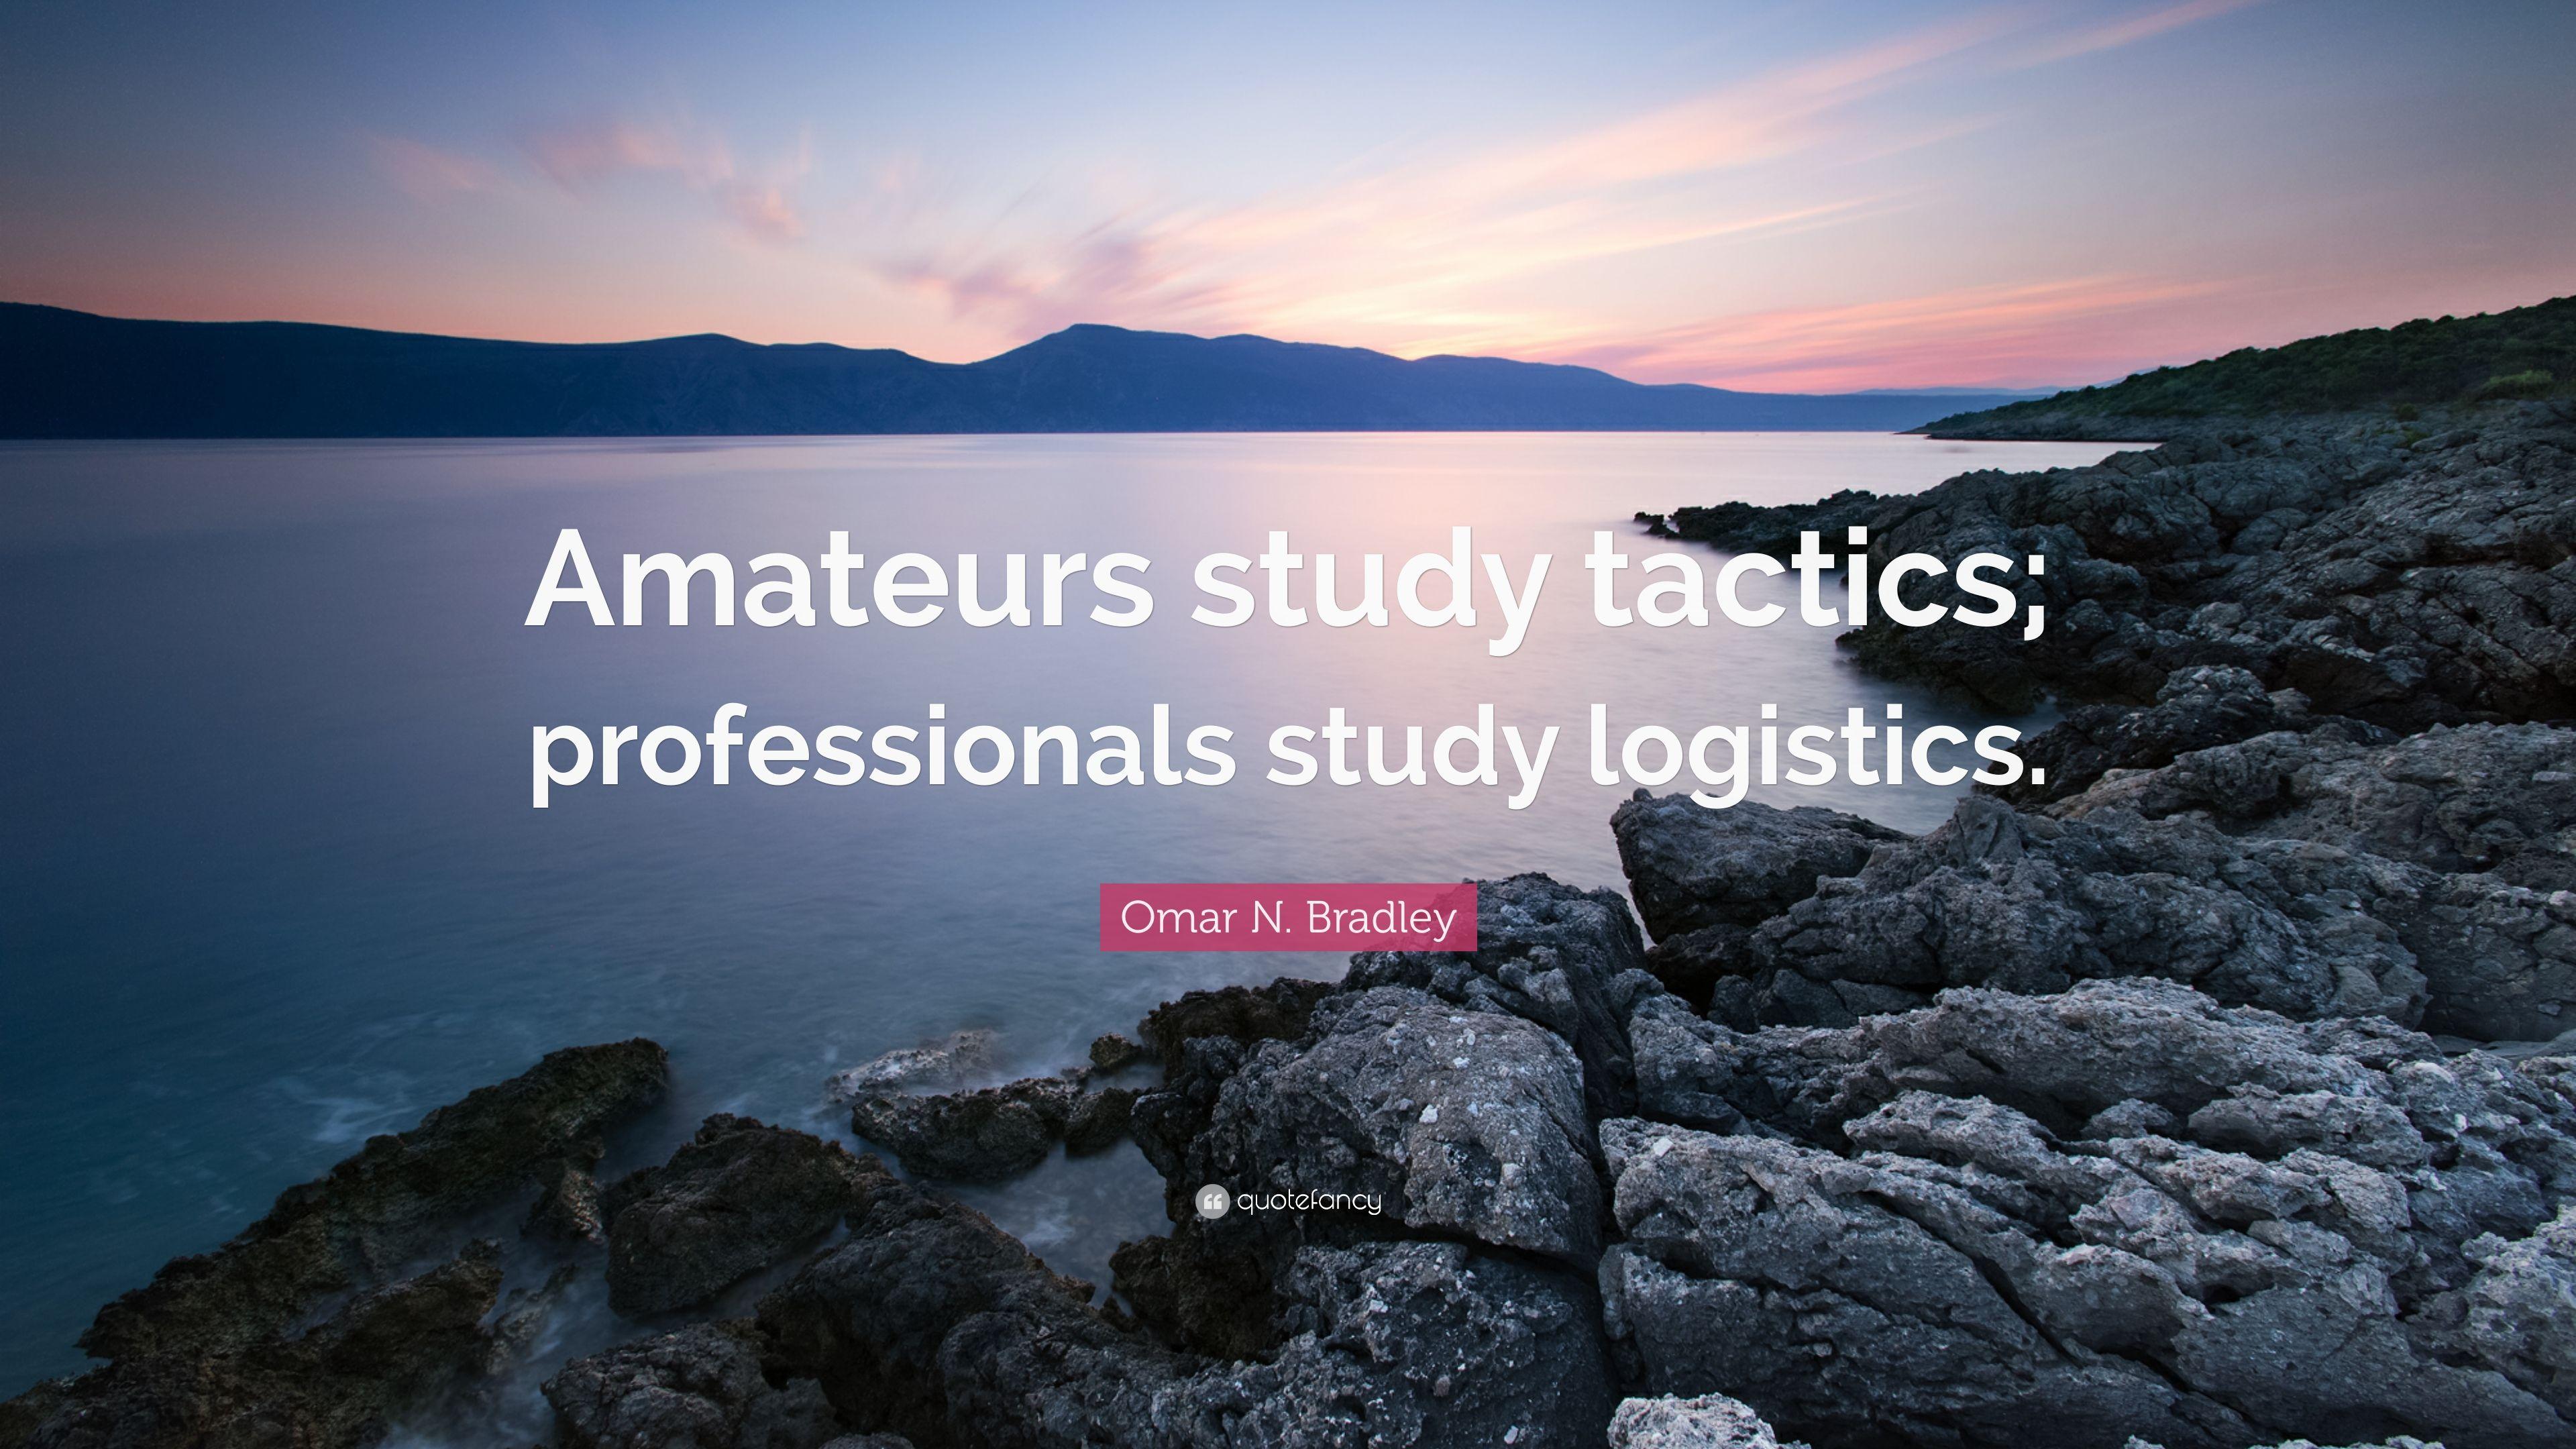 Omar N. Bradley Quote: “Amateurs study tactics; professionals study logistics.” (9 wallpaper)